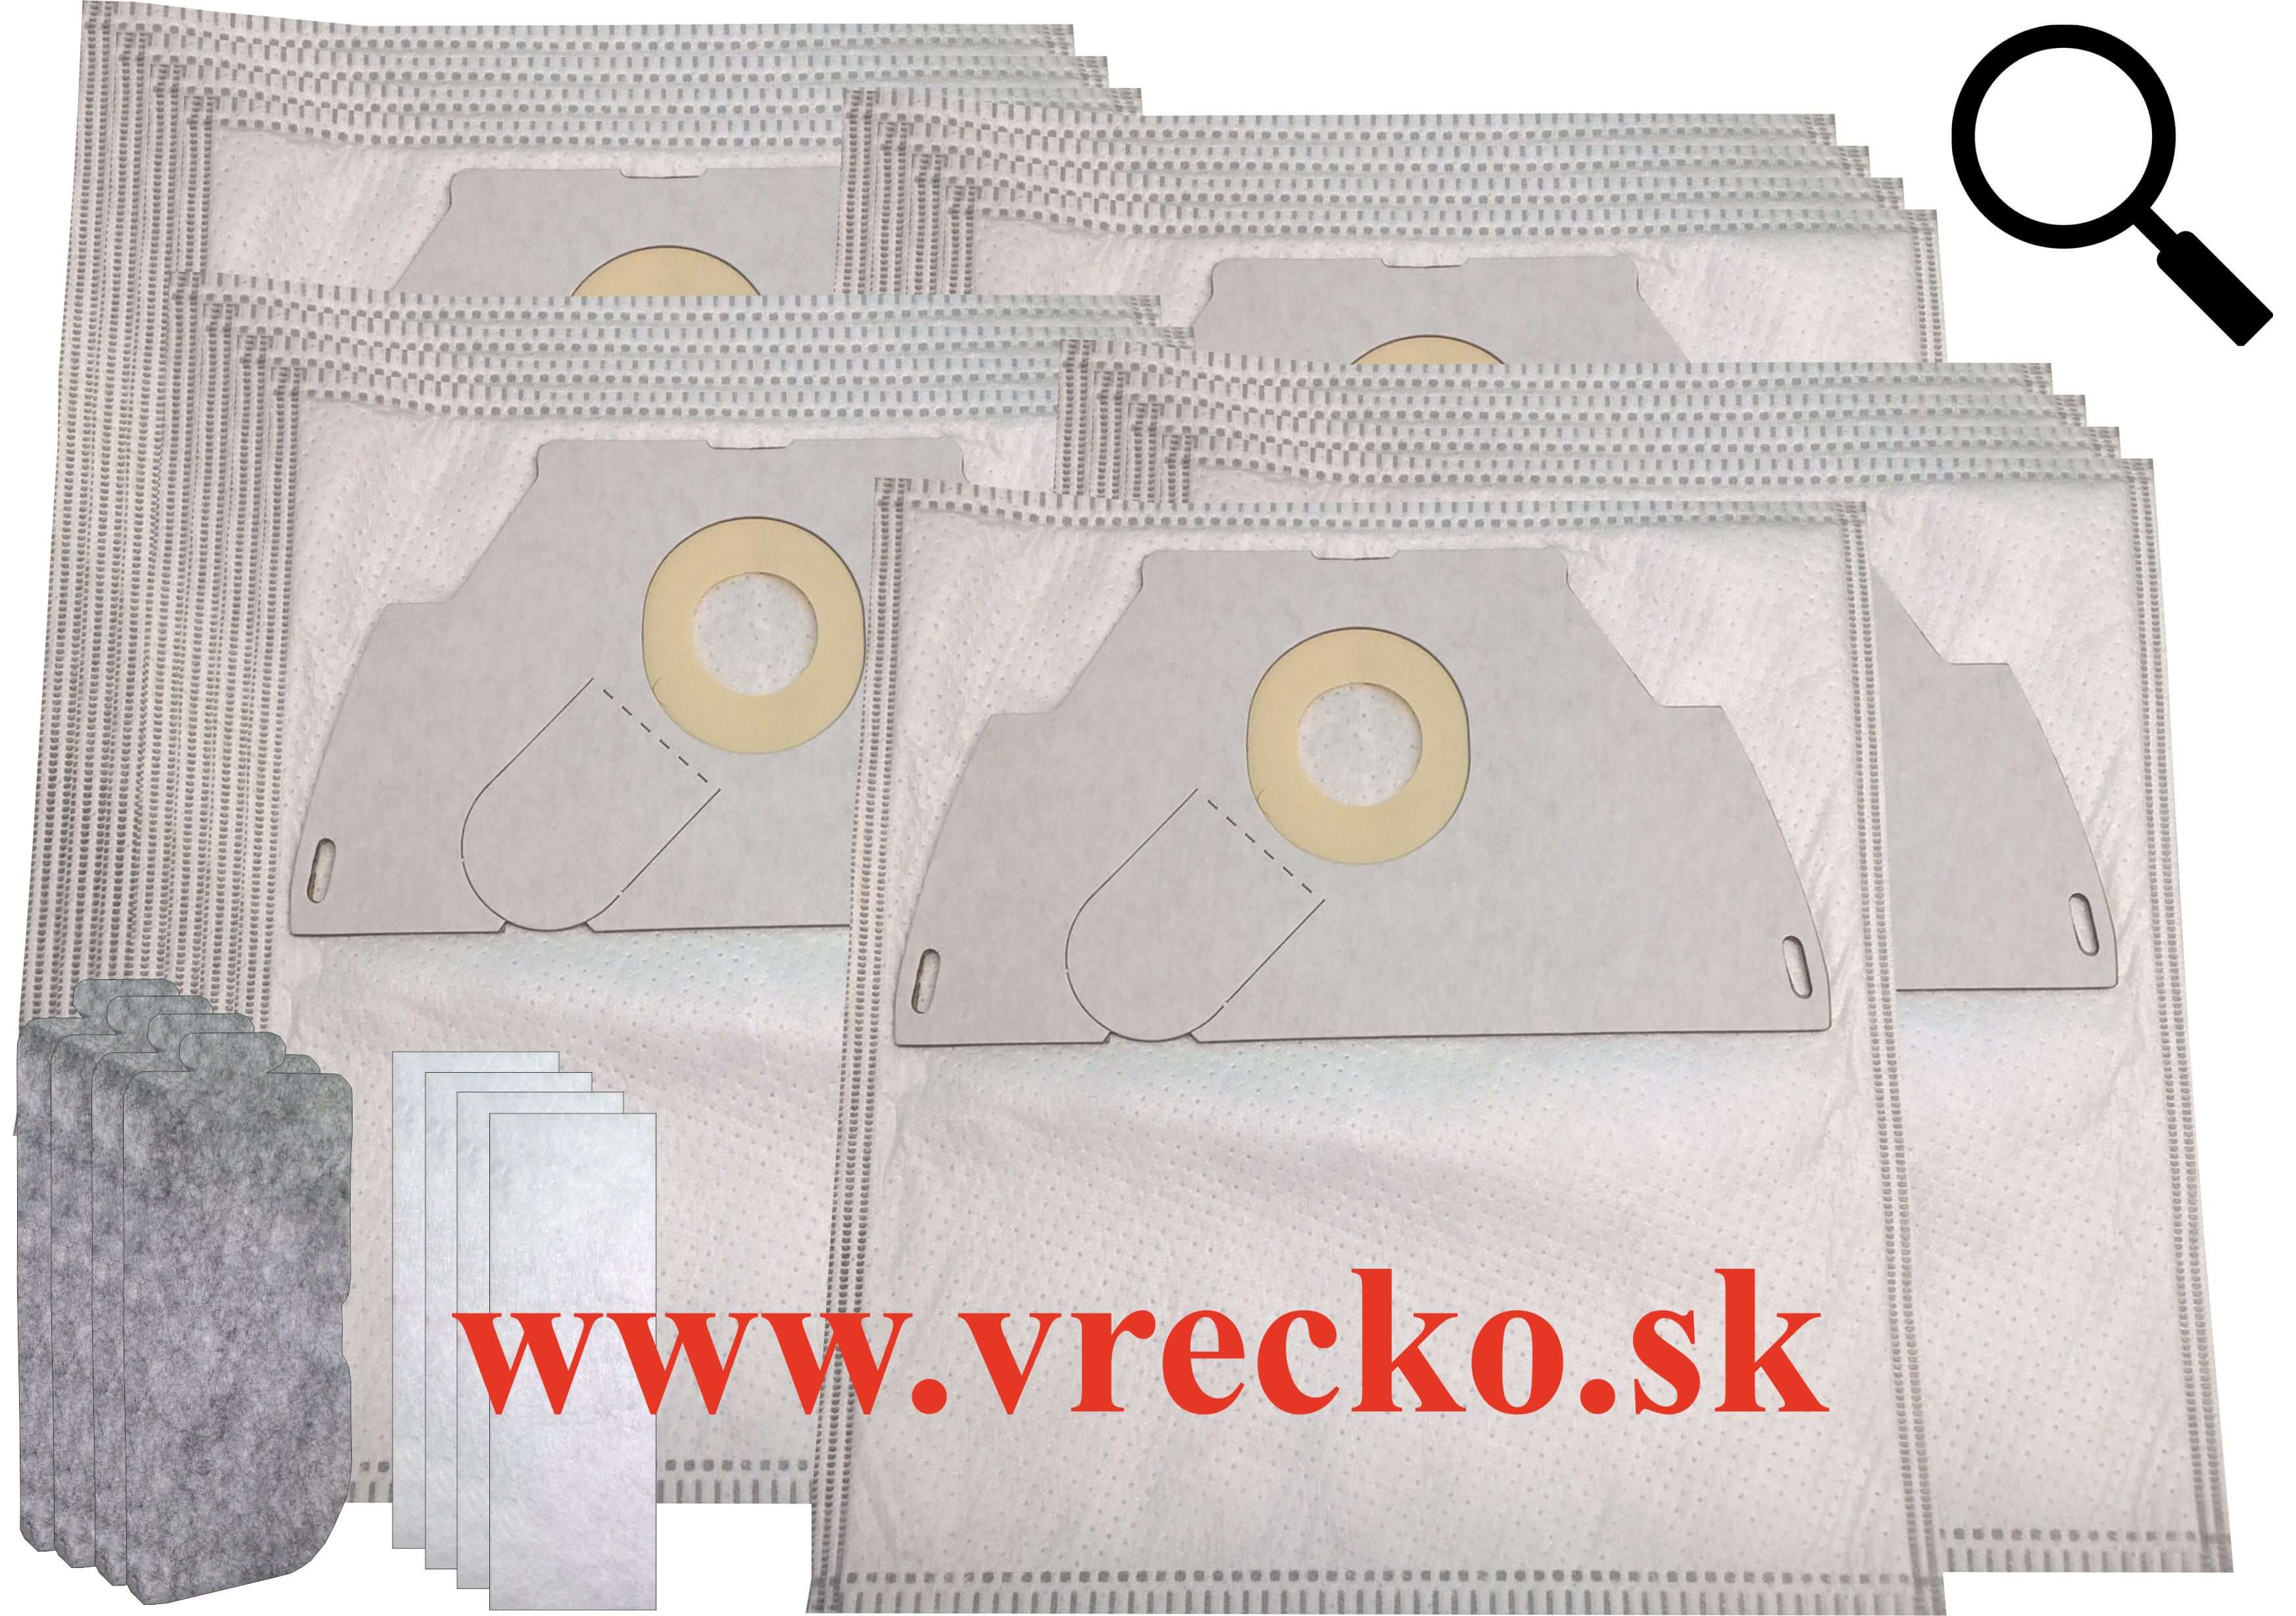 Electrolux 3601 - Textilné vrecká do vysávača XXL vo zvýhodnenom balení s dopravou zdarma (17ks)